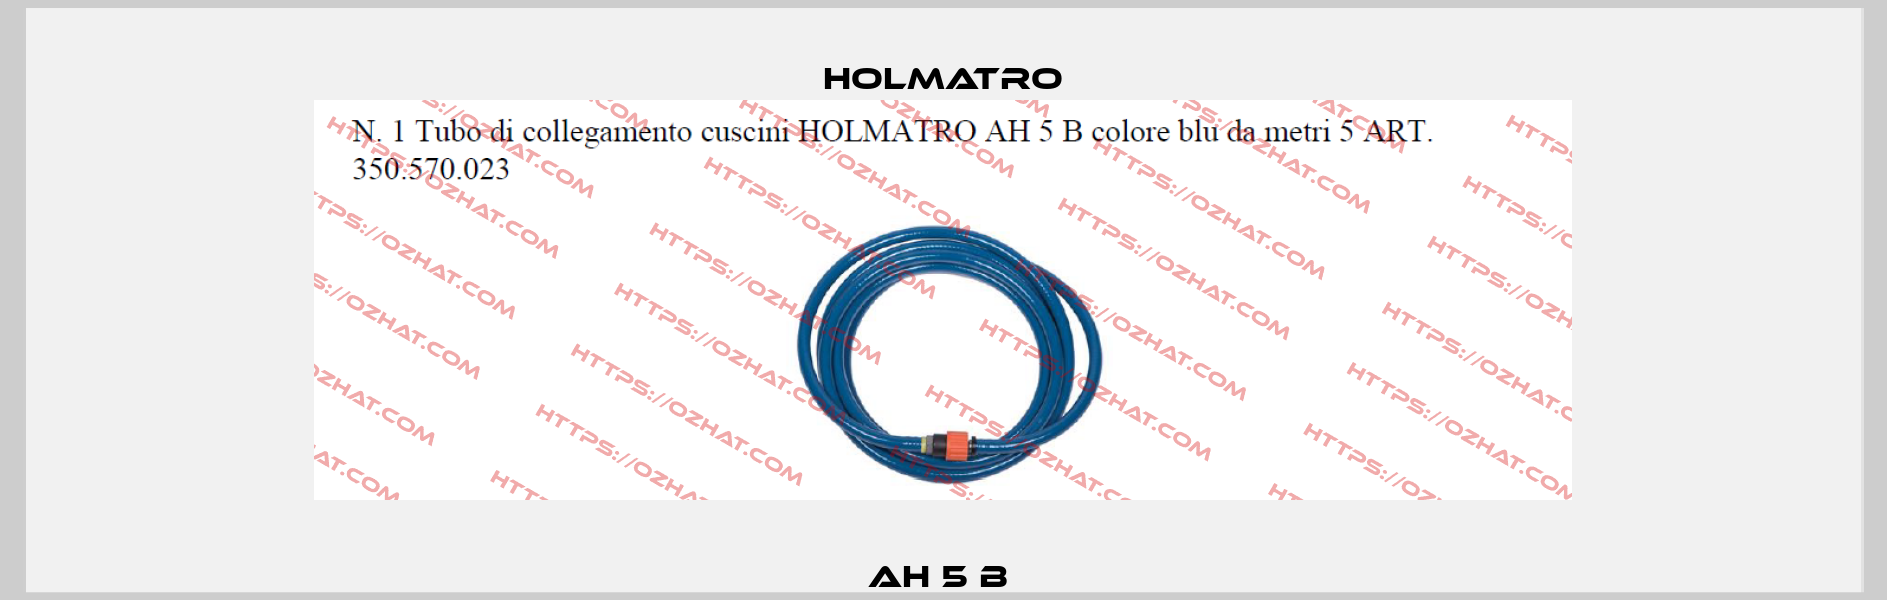 AH 5 B  Holmatro